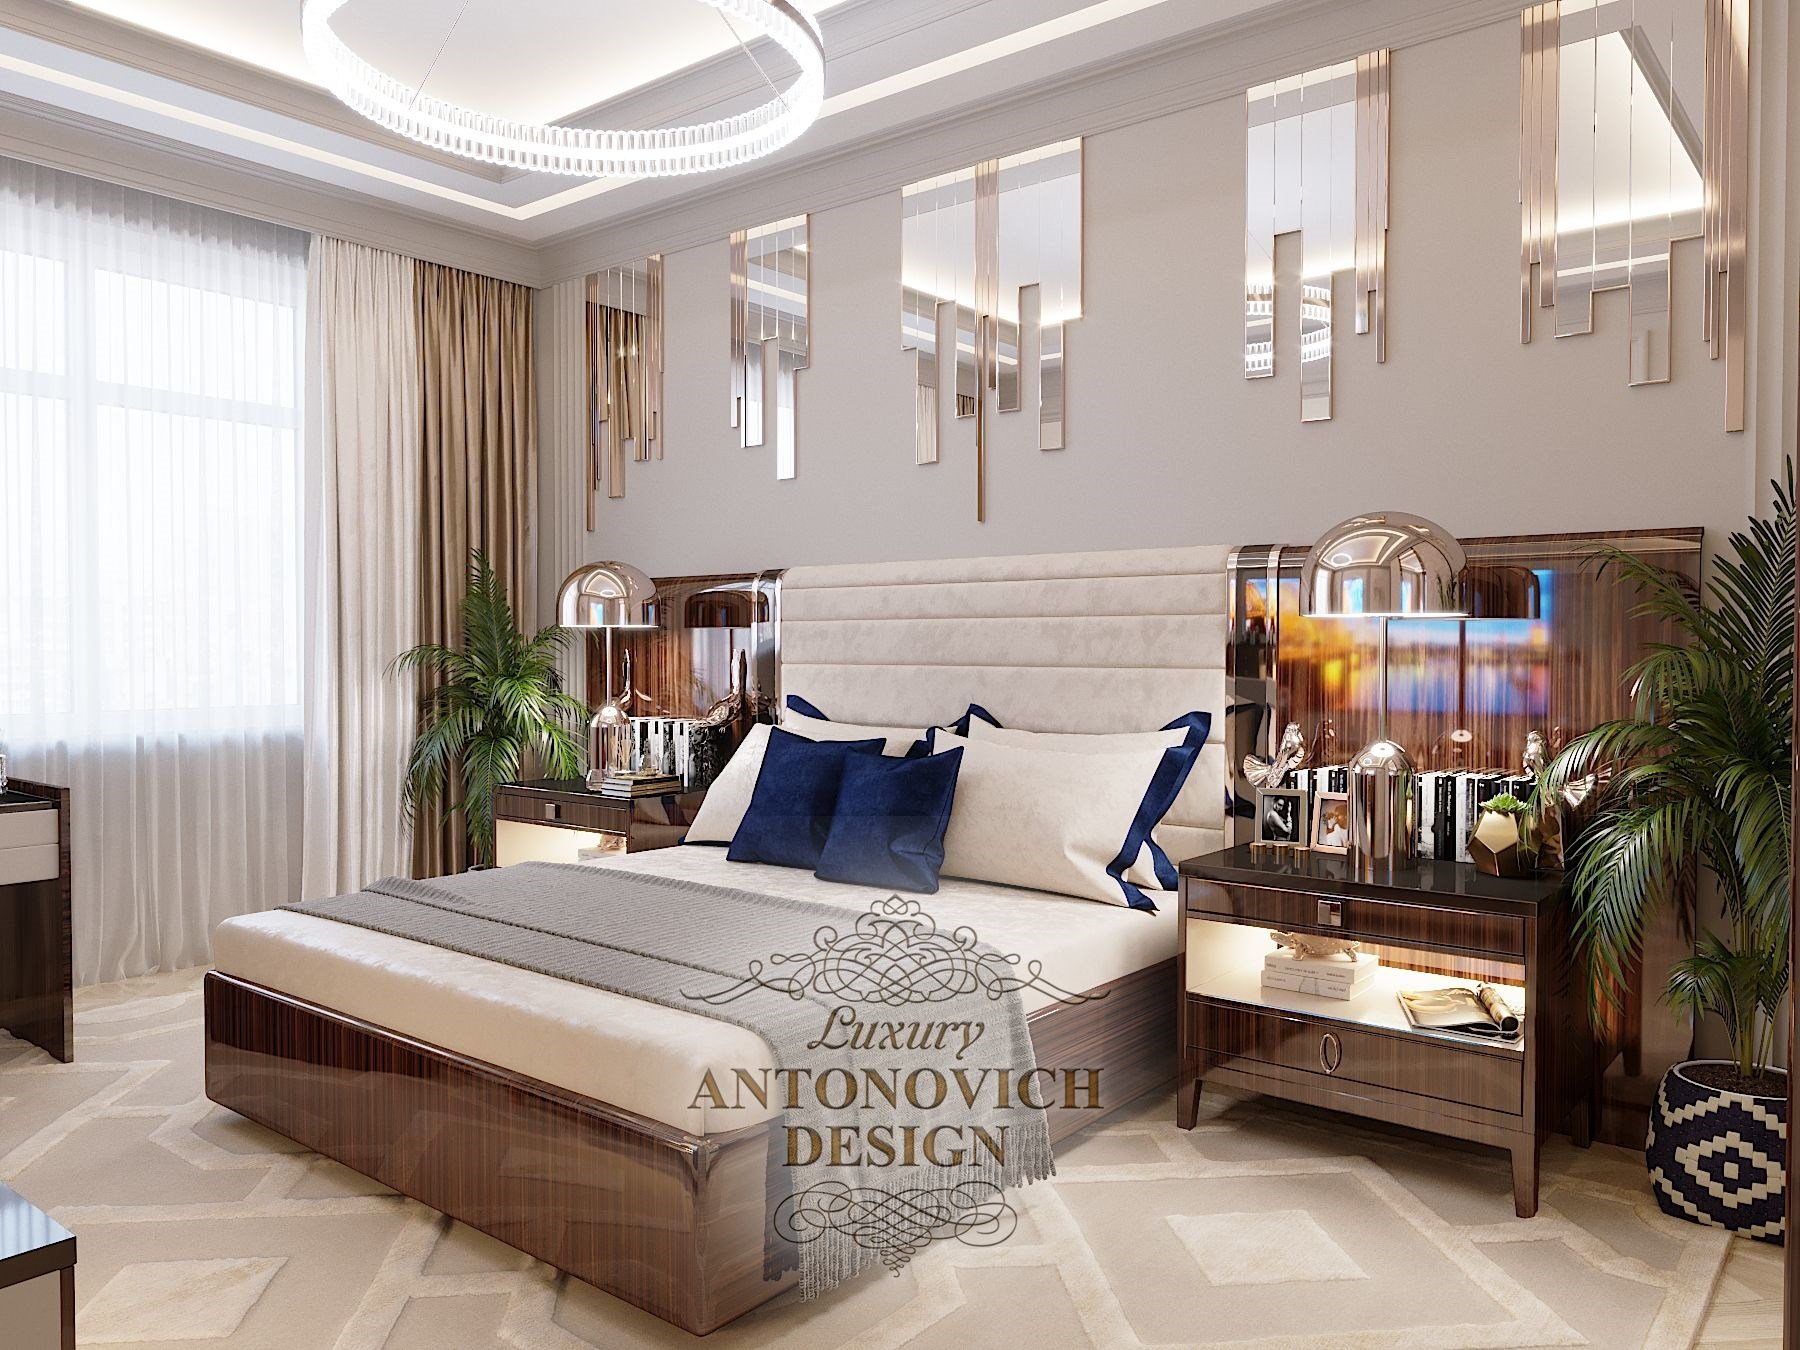 Кровать в спальне мальчика с современным дизайном от студии элитных интерьеров Luxury ANTONOVICH DESIGN